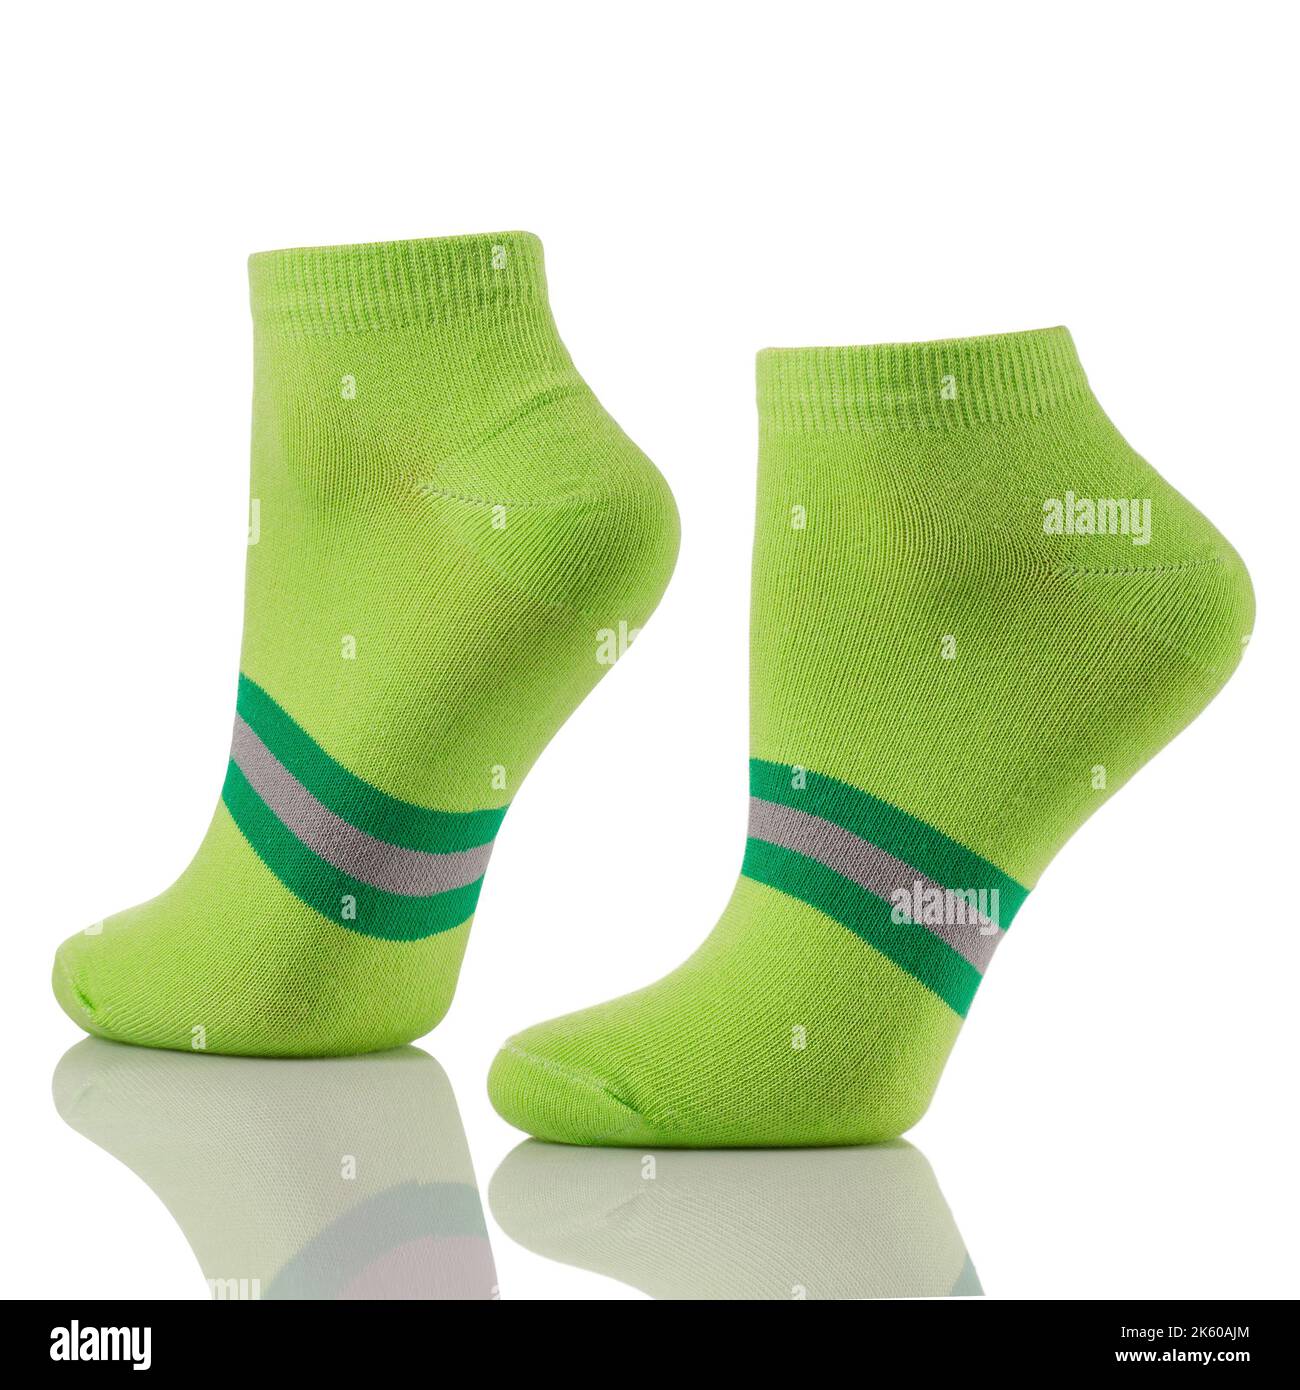 Primo piano di un paio di calze sportive in cotone sulle gambe invisibili isolate su fondo bianco. Set di calzini corti verdi per pubblicità, logo o posizionamento a caldo Foto Stock